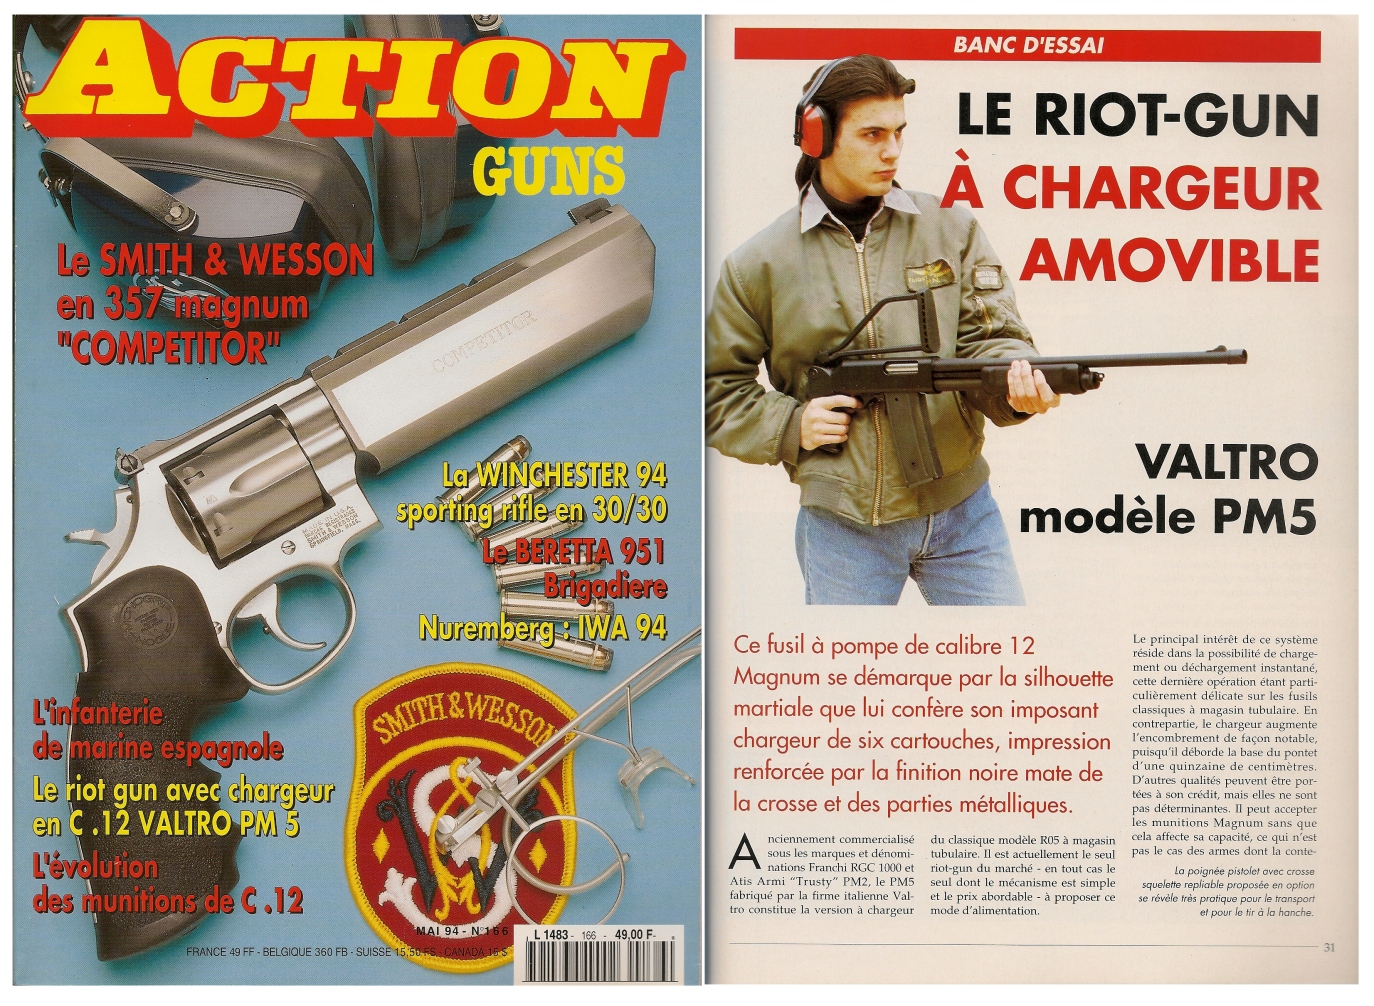 Le banc d'essai du riot-gun Valtro modèle PM5 a été publié sur 6 pages dans le magazine Action Guns n° 166 (mai 1994). 